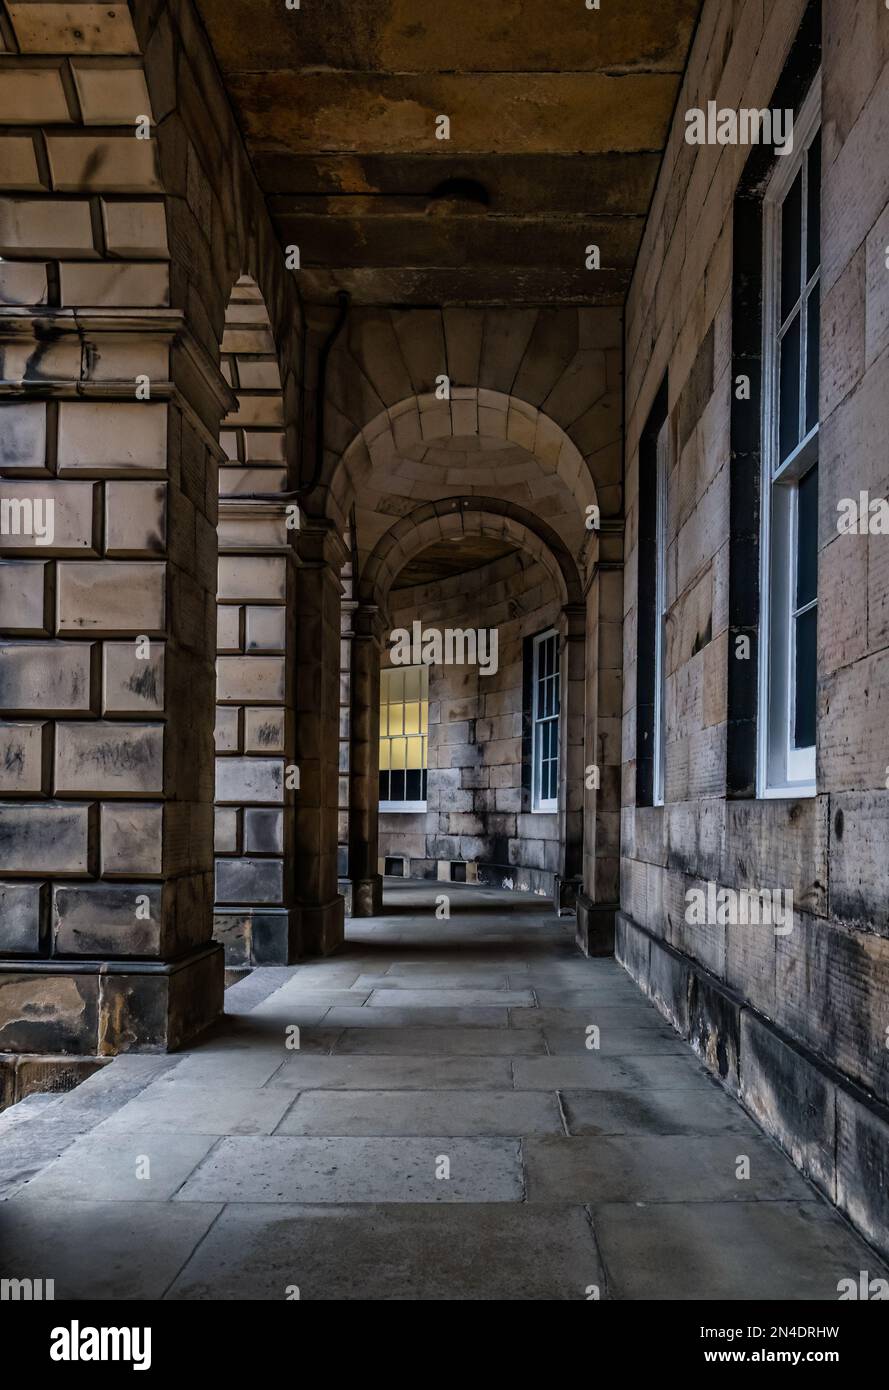 Überdachter Torbogen oder Korridor am Court of Session Gebäude, Parliament Square, Edinburgh, Schottland, Großbritannien Stockfoto